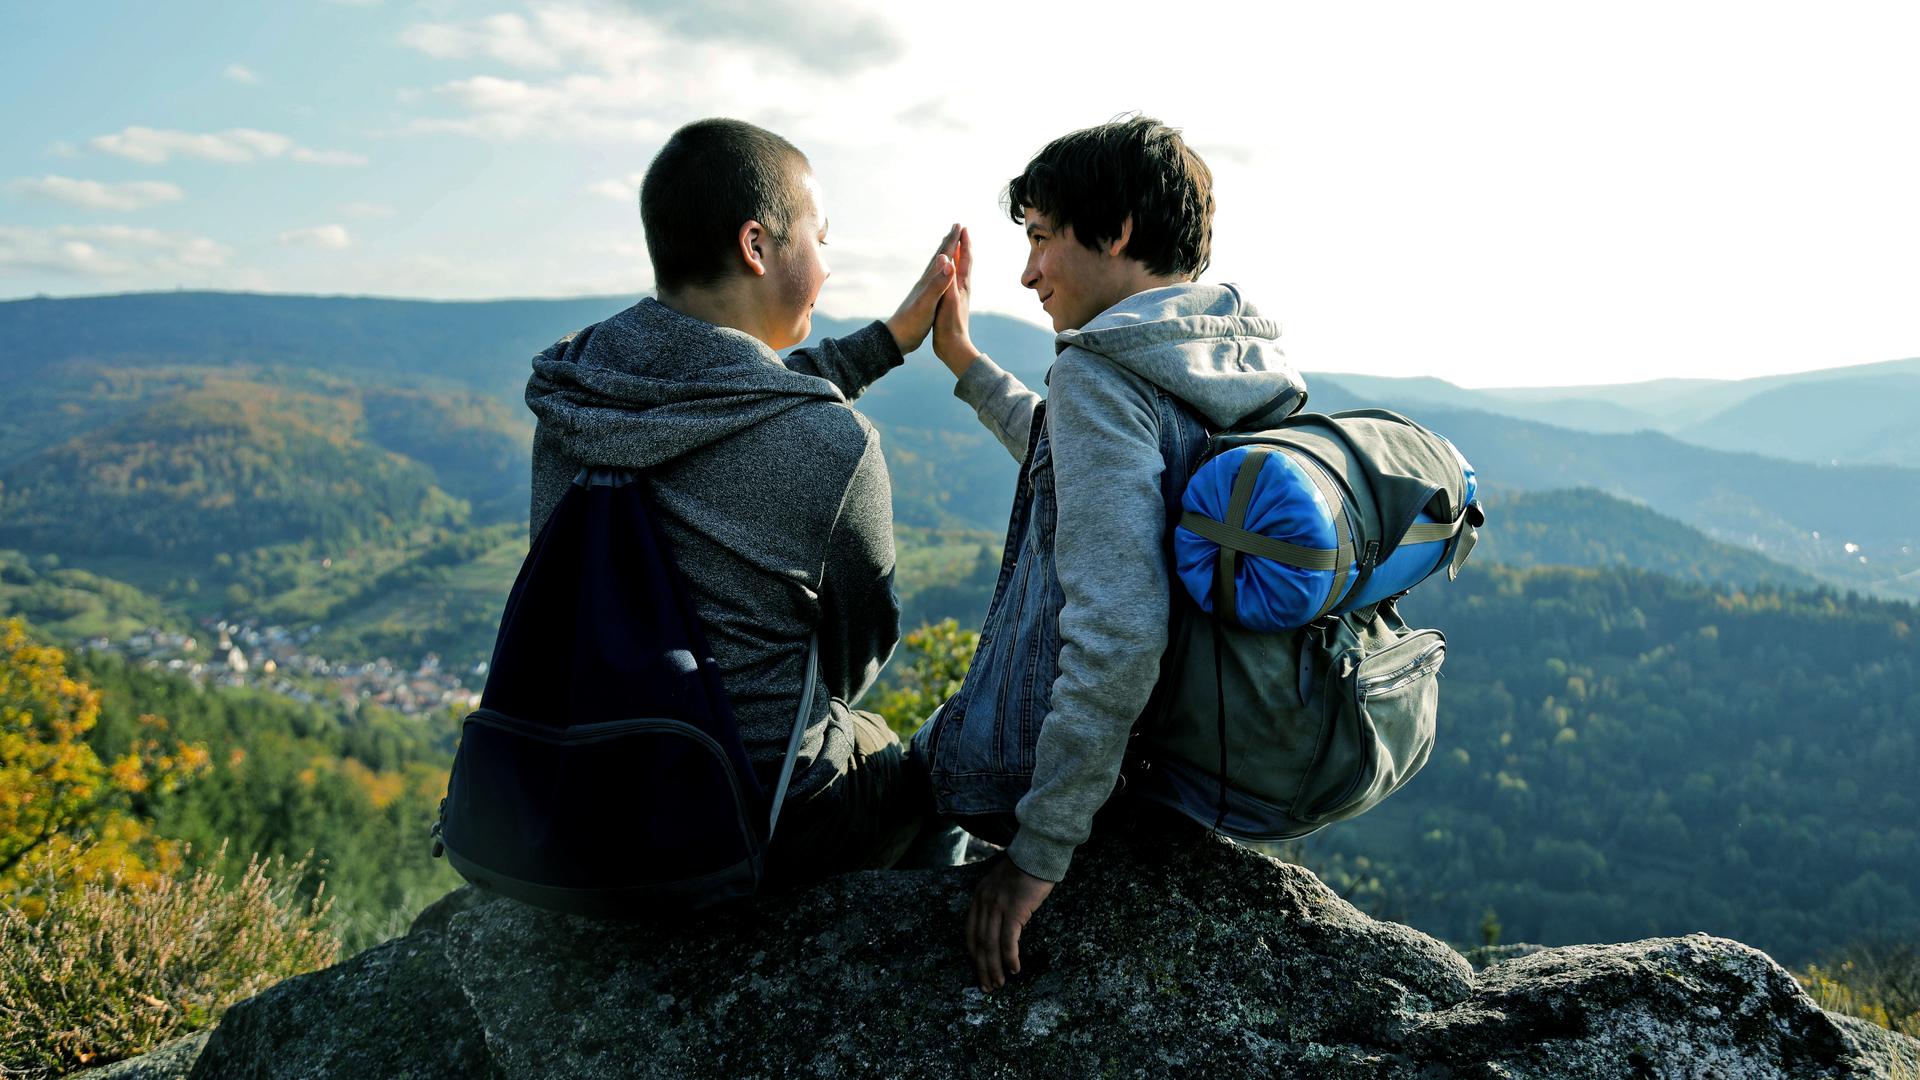 Zwei Jungen geben sich ein High Five vor einer Bergkulisse.